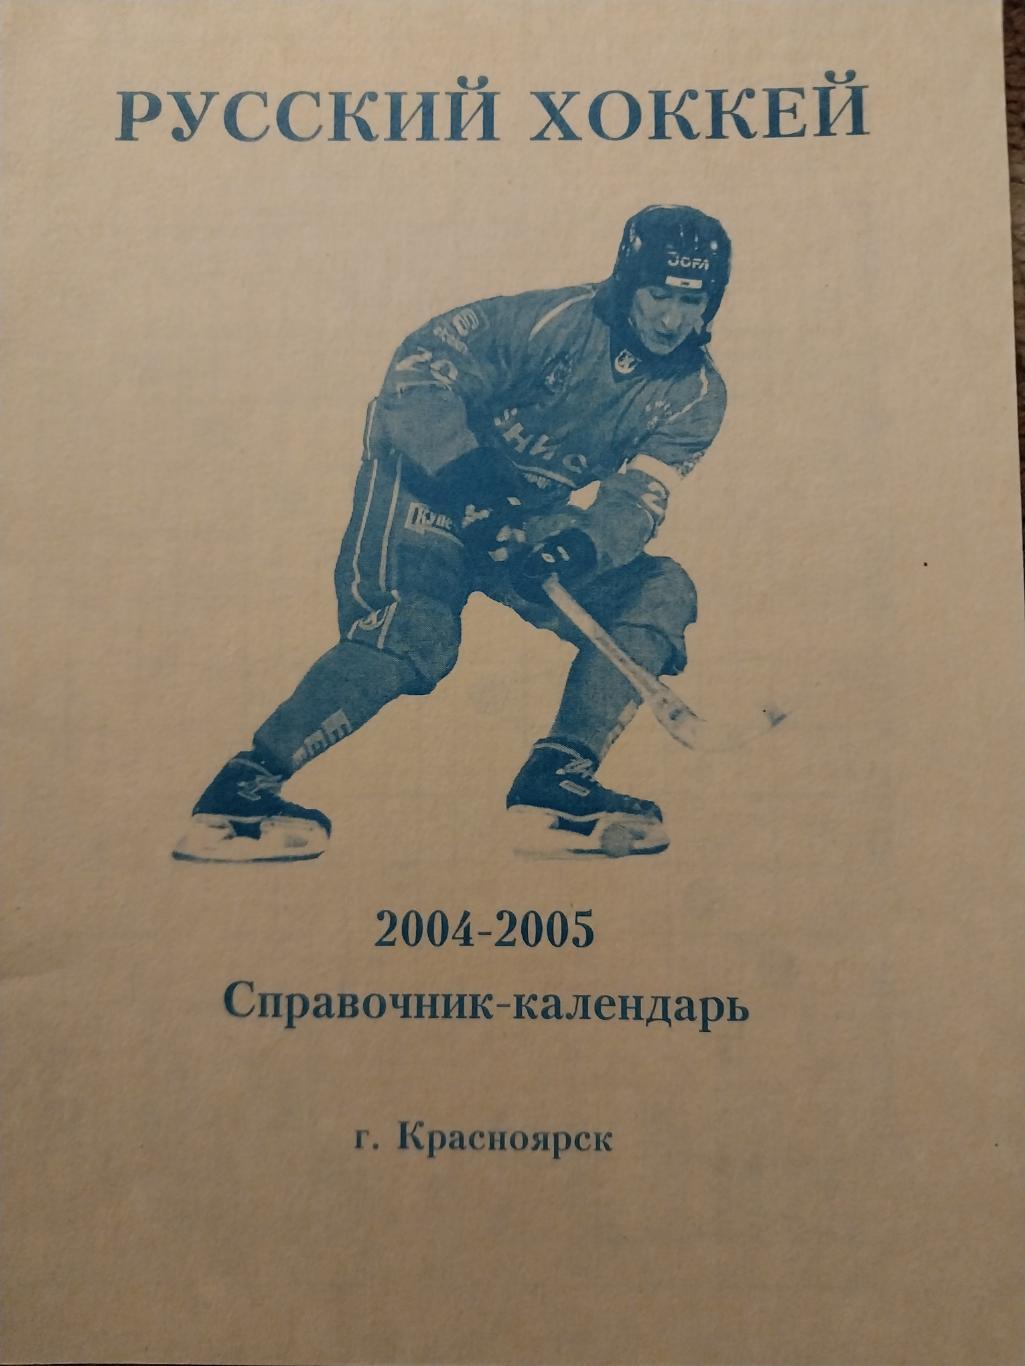 Хоккей с мячом, Енисей Красноярск, 2004-2005